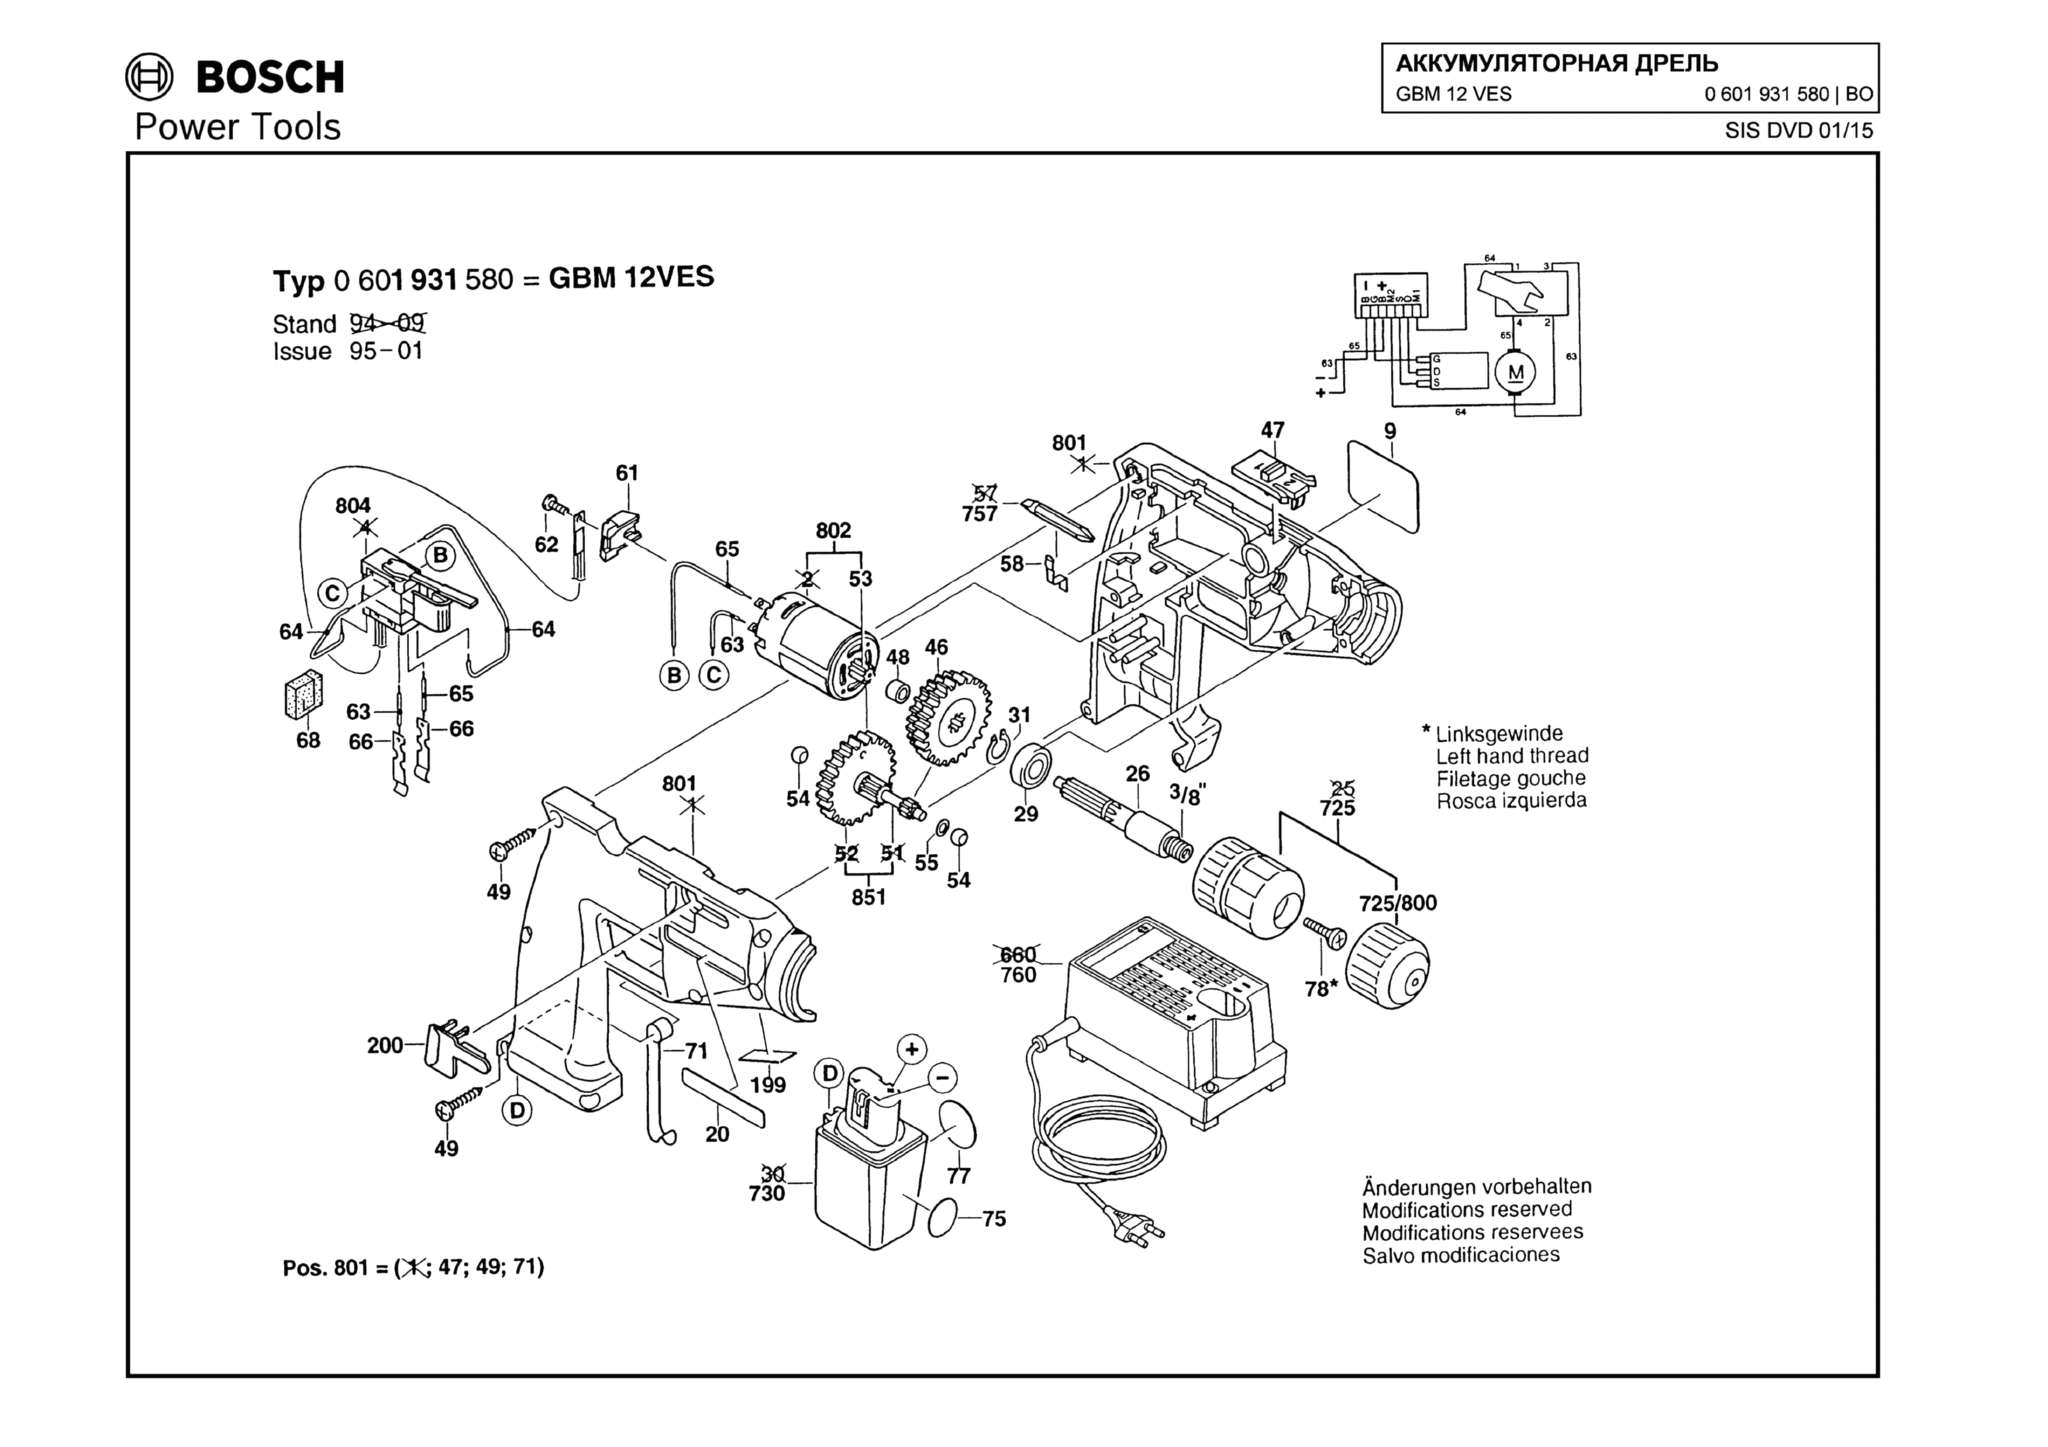 Запчасти, схема и деталировка Bosch GBM 12 VES (ТИП 0601931580)